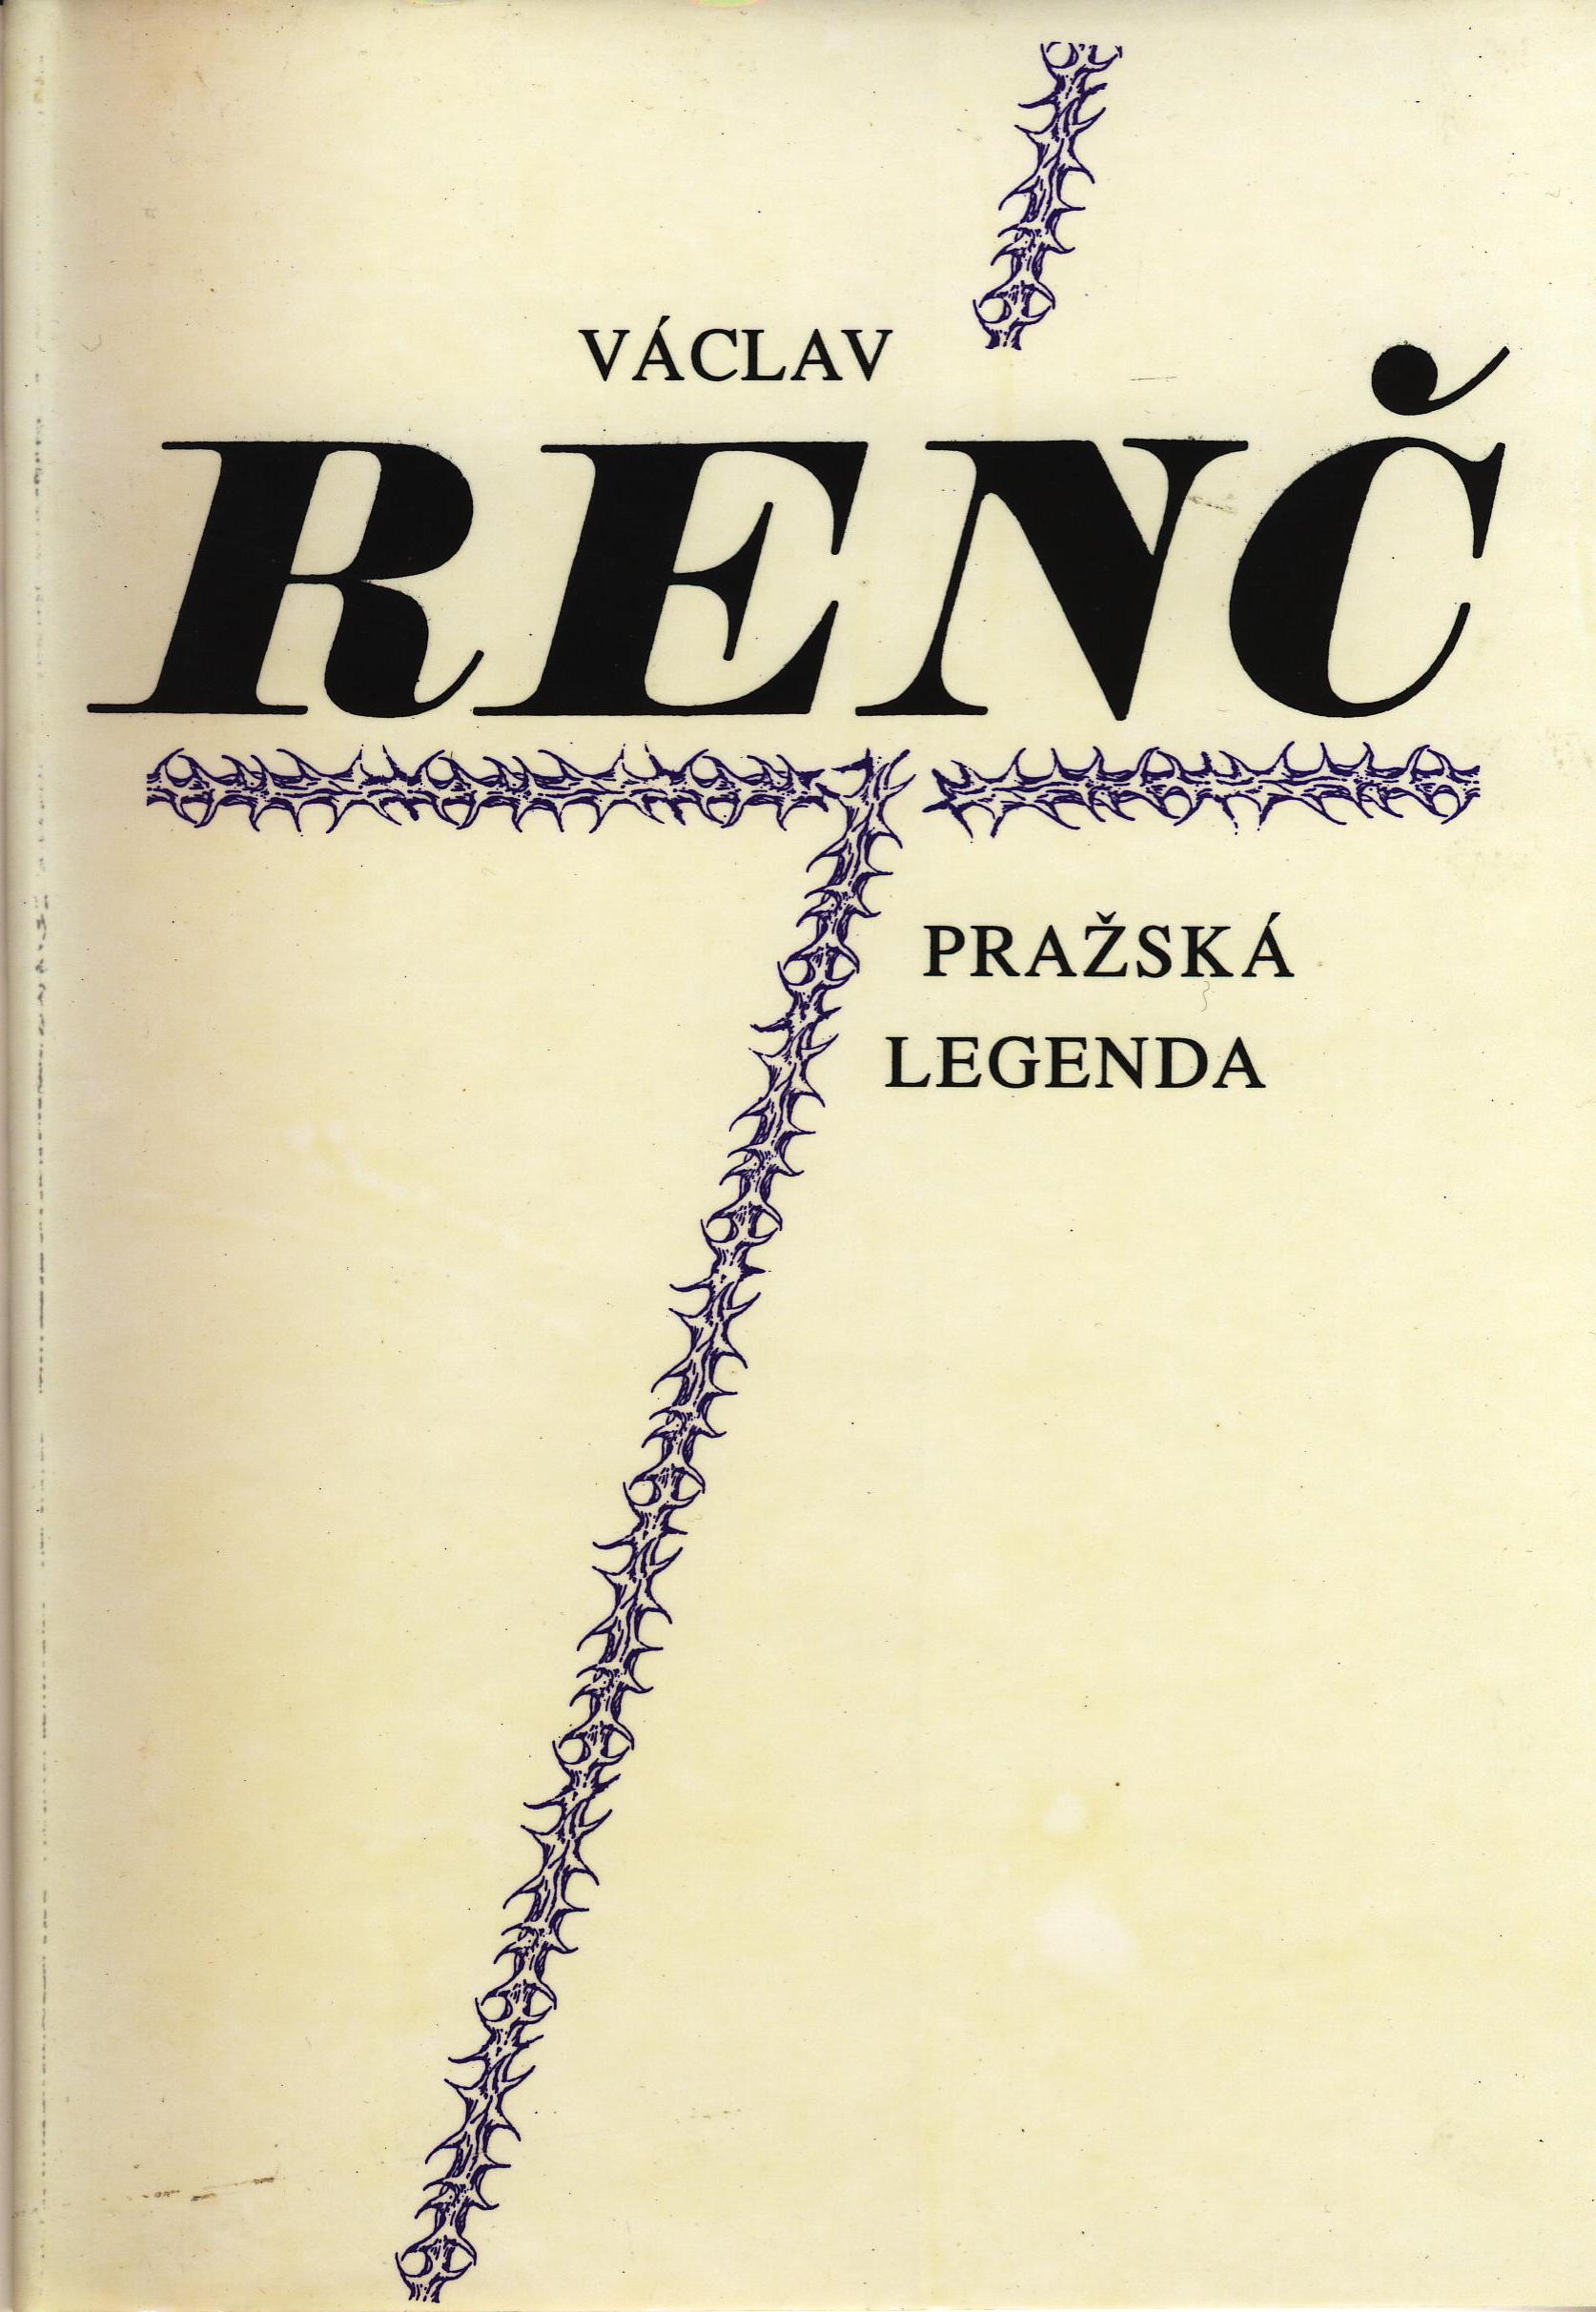 prazska-legenda-titulni-strana